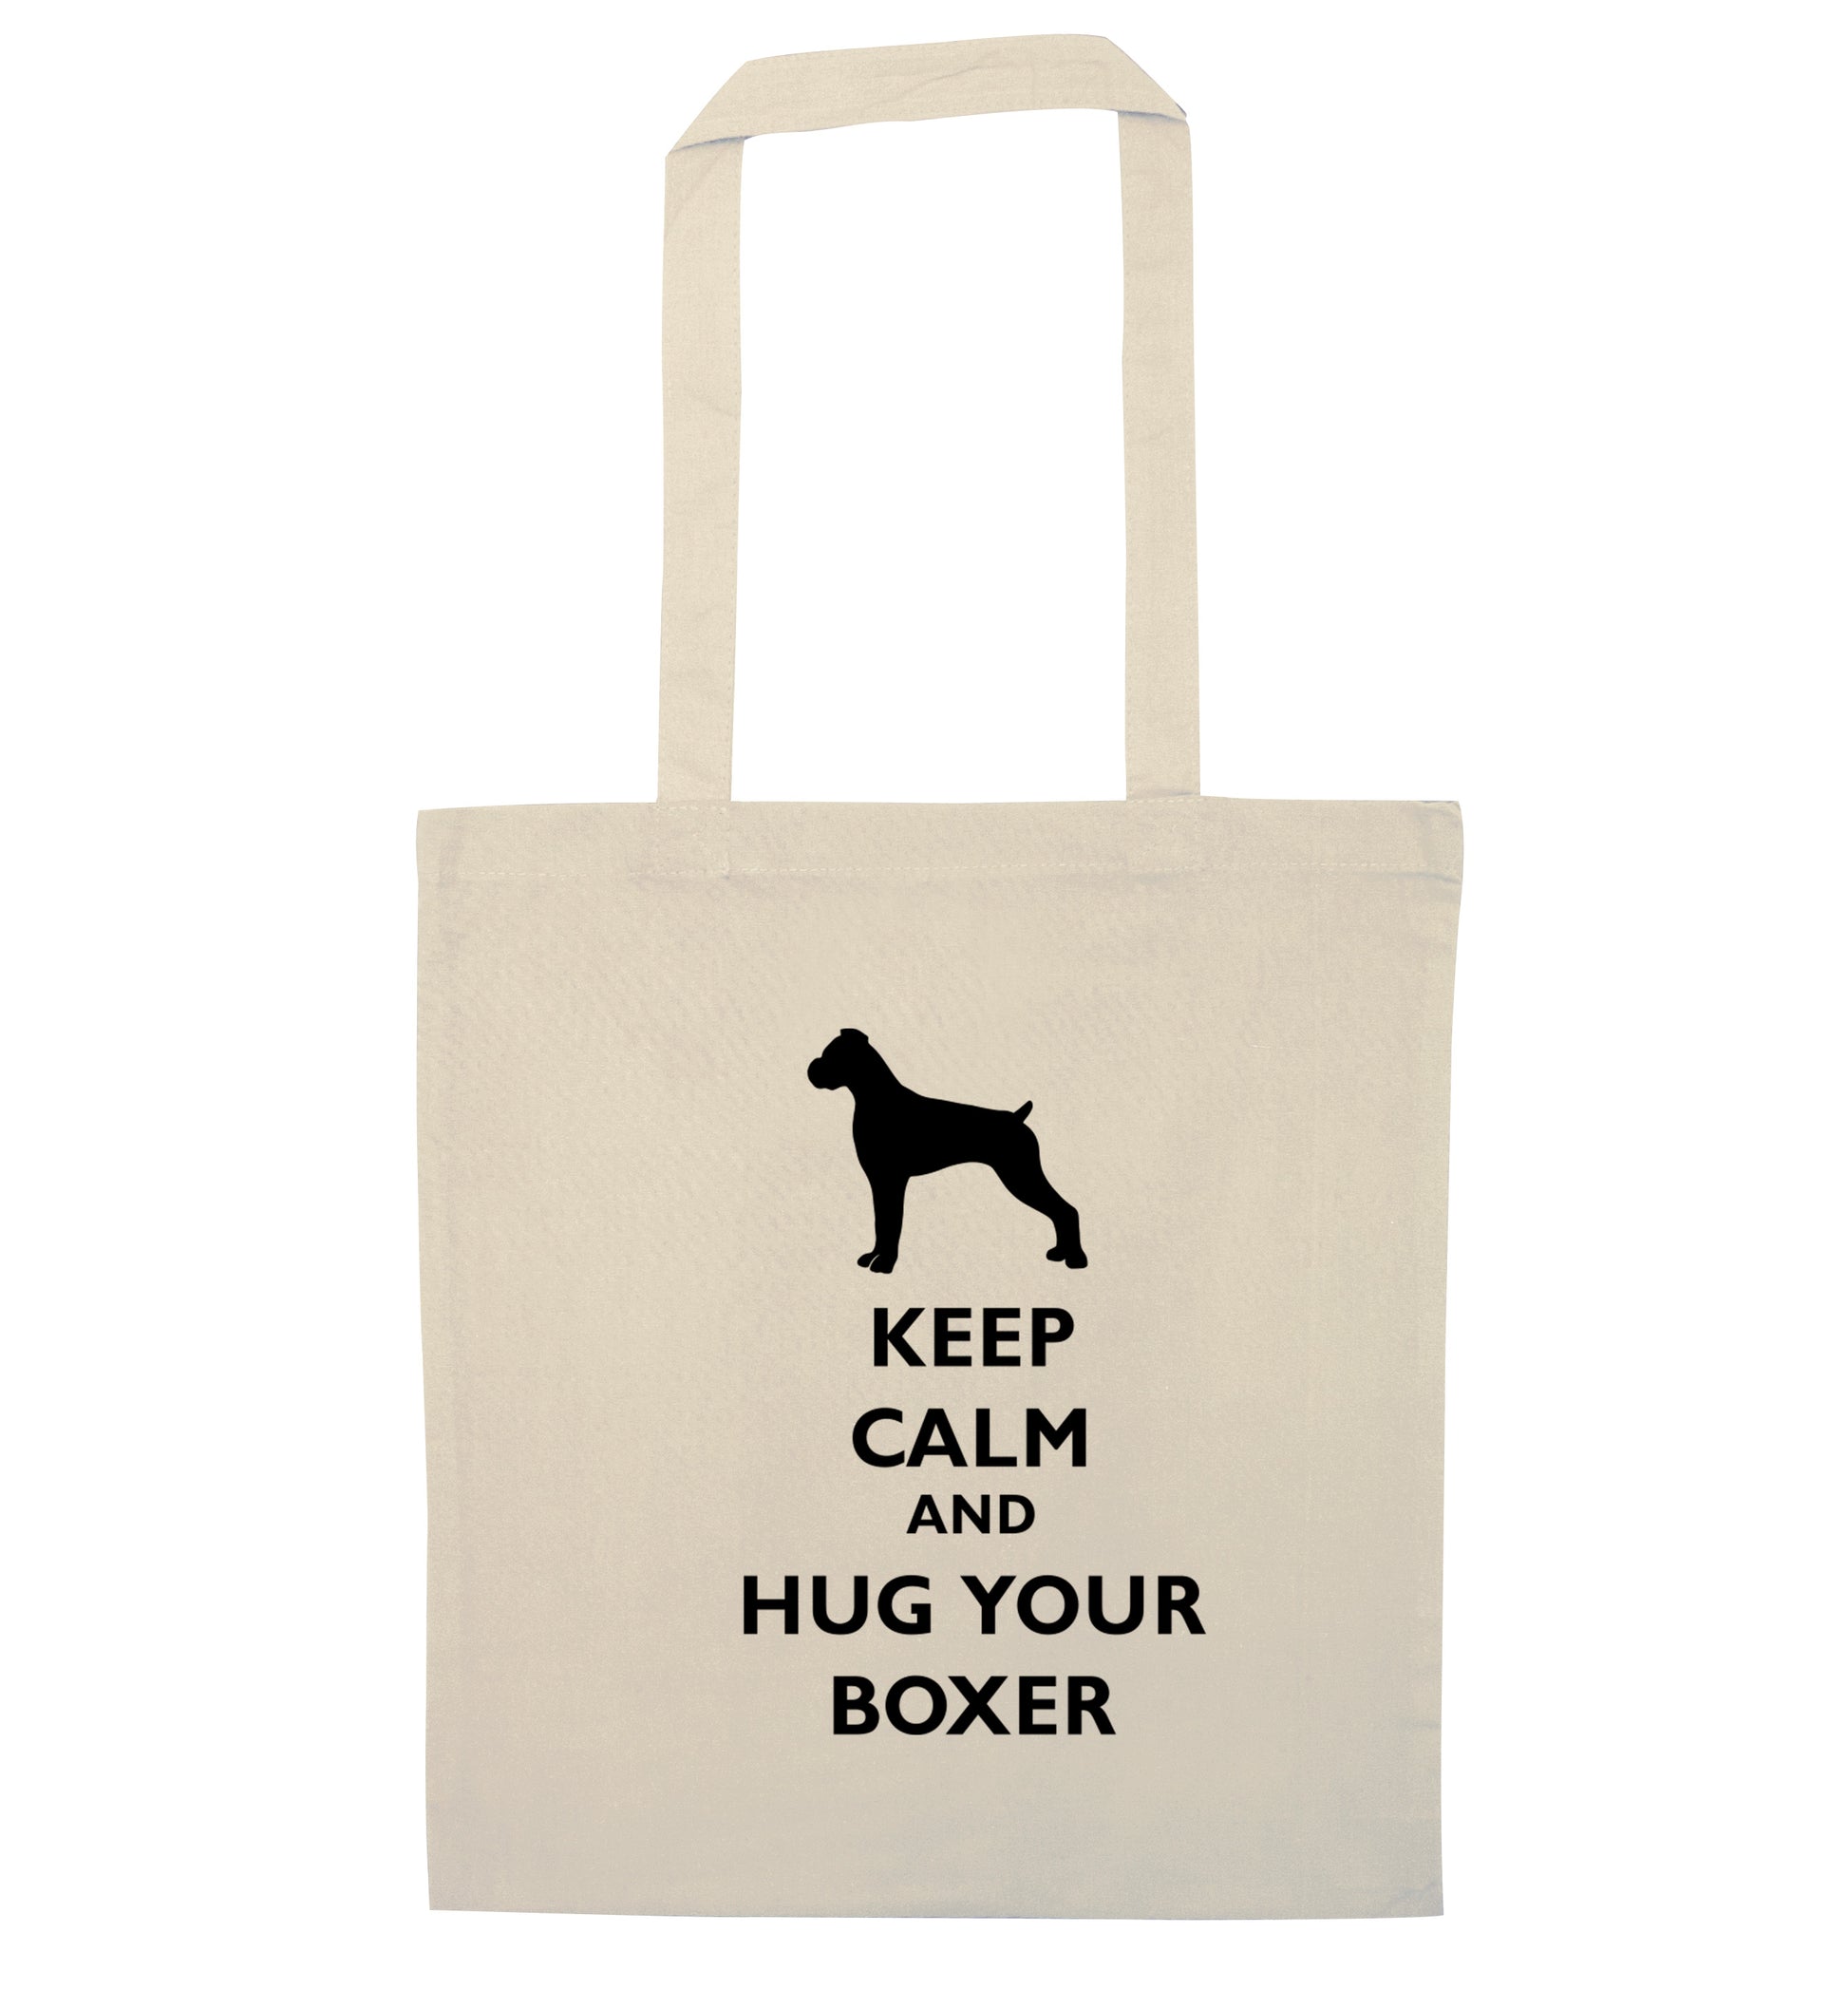 Keep calm and hug your boxer natural tote bag